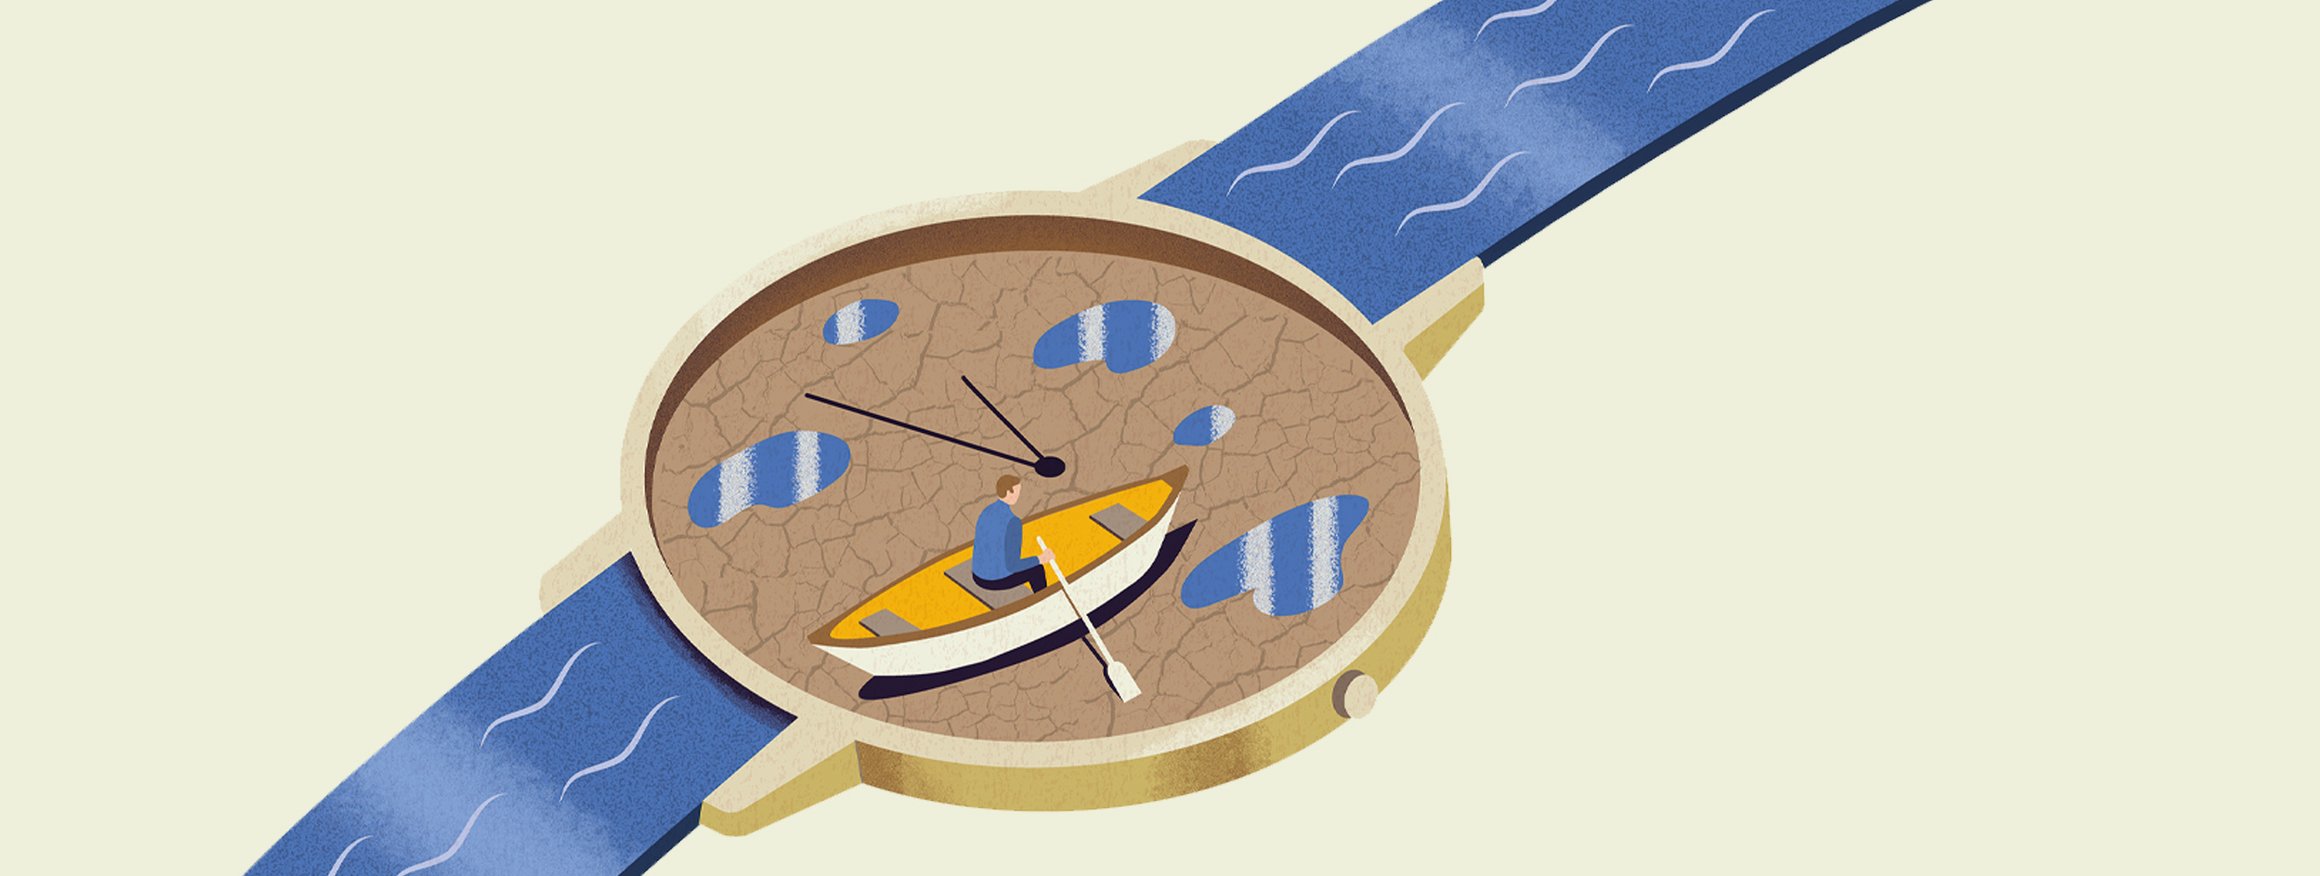 Die Illustration zeigt einen Mann in einem Ruderboot auf dem Trockenen in einer Uhr und das Armband ist ein fließendes Gewässer